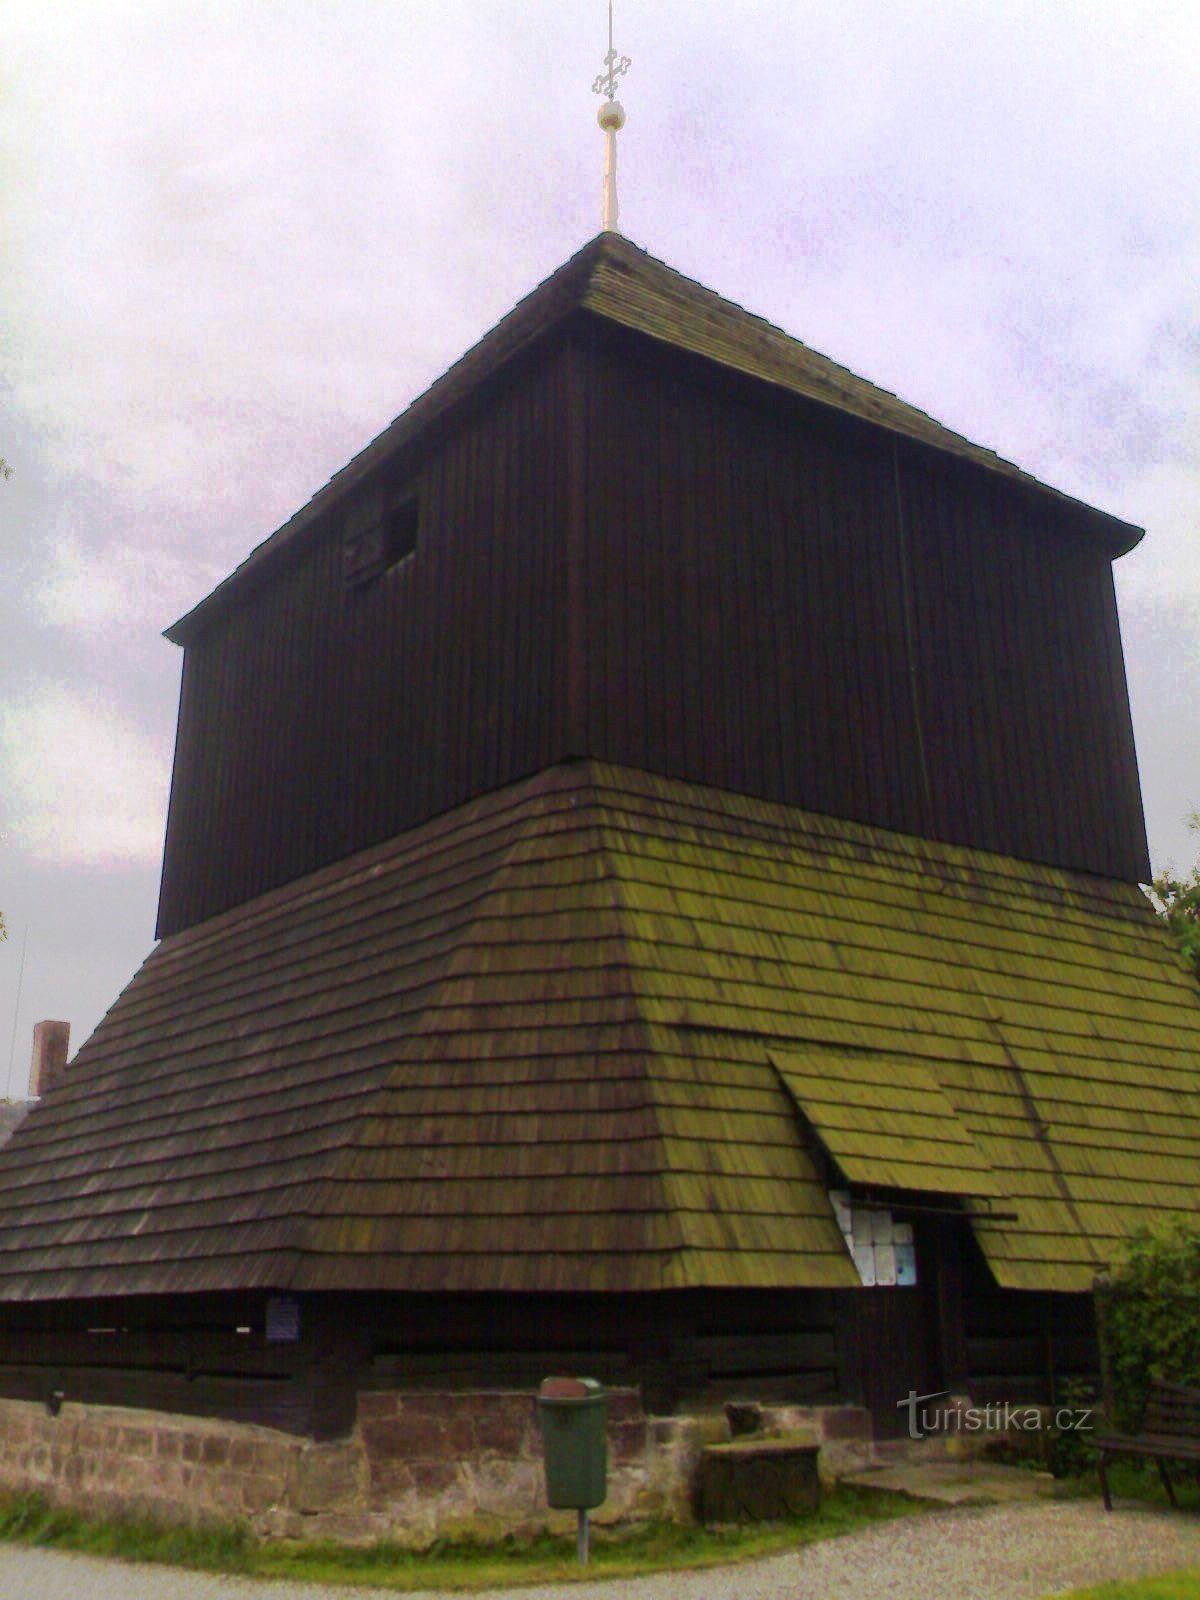 Rovensko pod Troskami - hölzerner Glockenturm